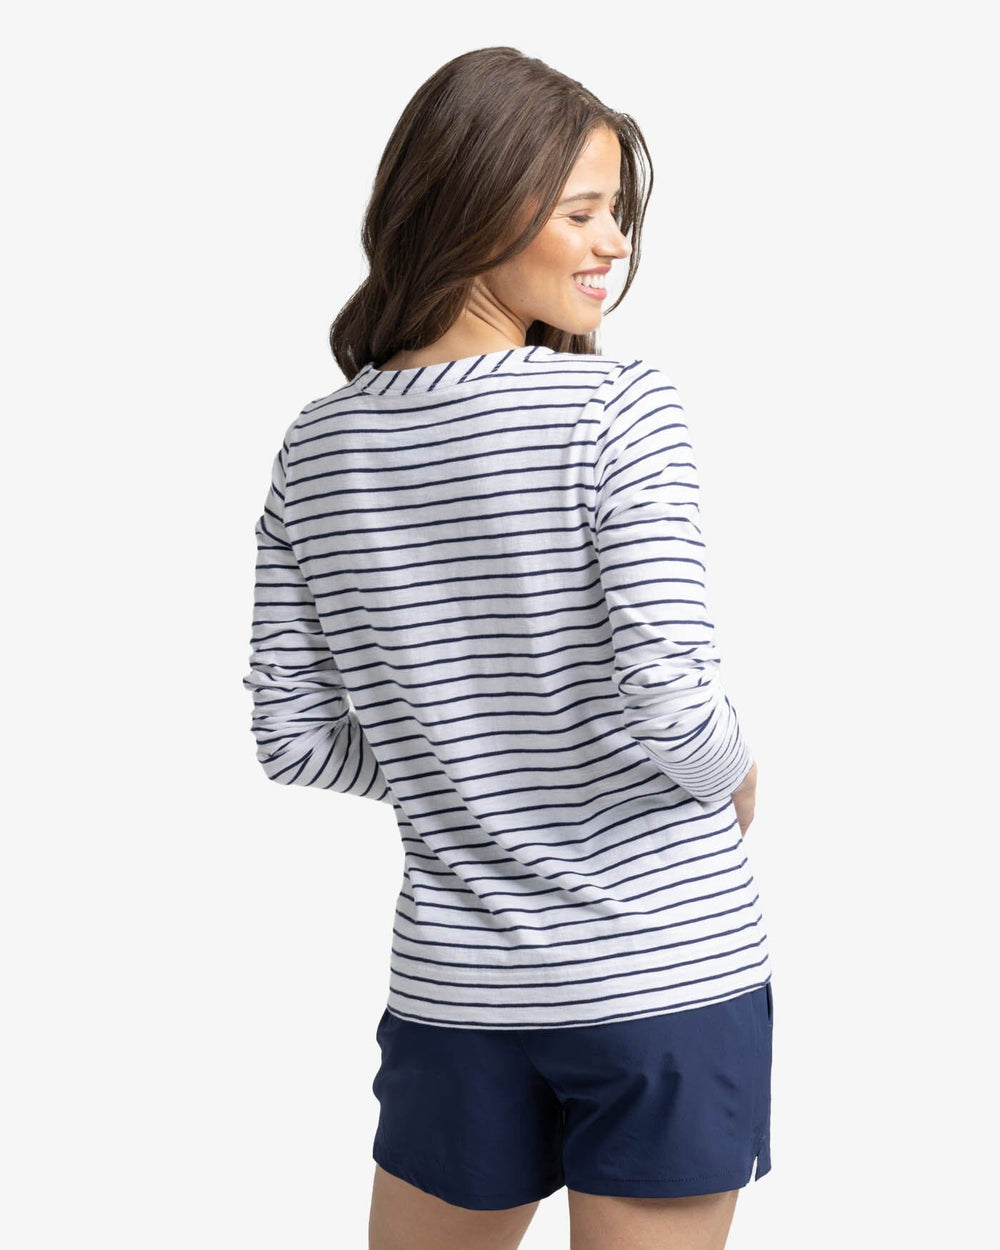 Stripe Long Sleeve T-shirt - Navy & White